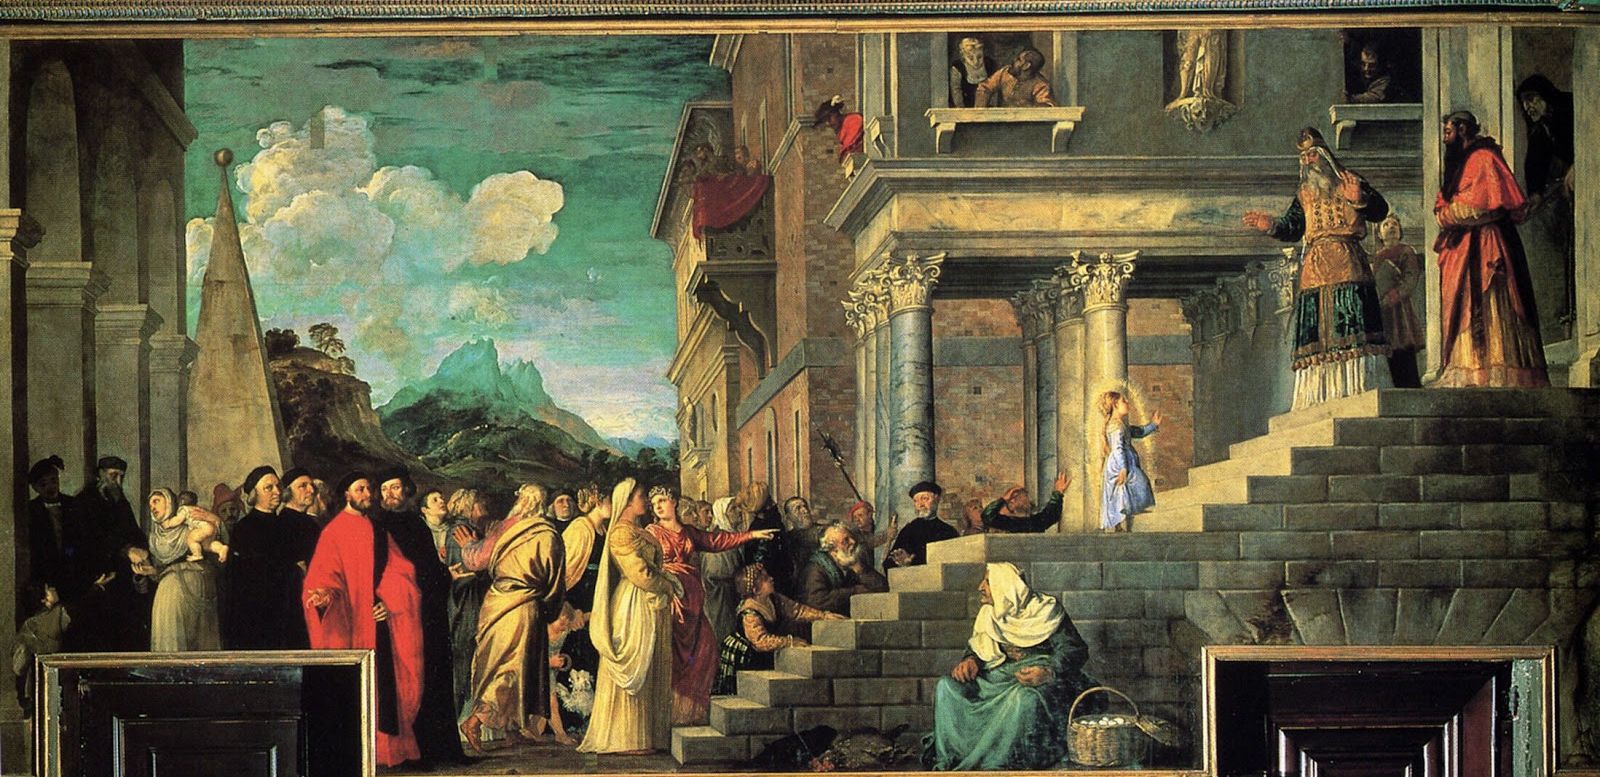 Fascinantes Relatos sobre la Presentación y la Vida de la Virgen María en el Templo